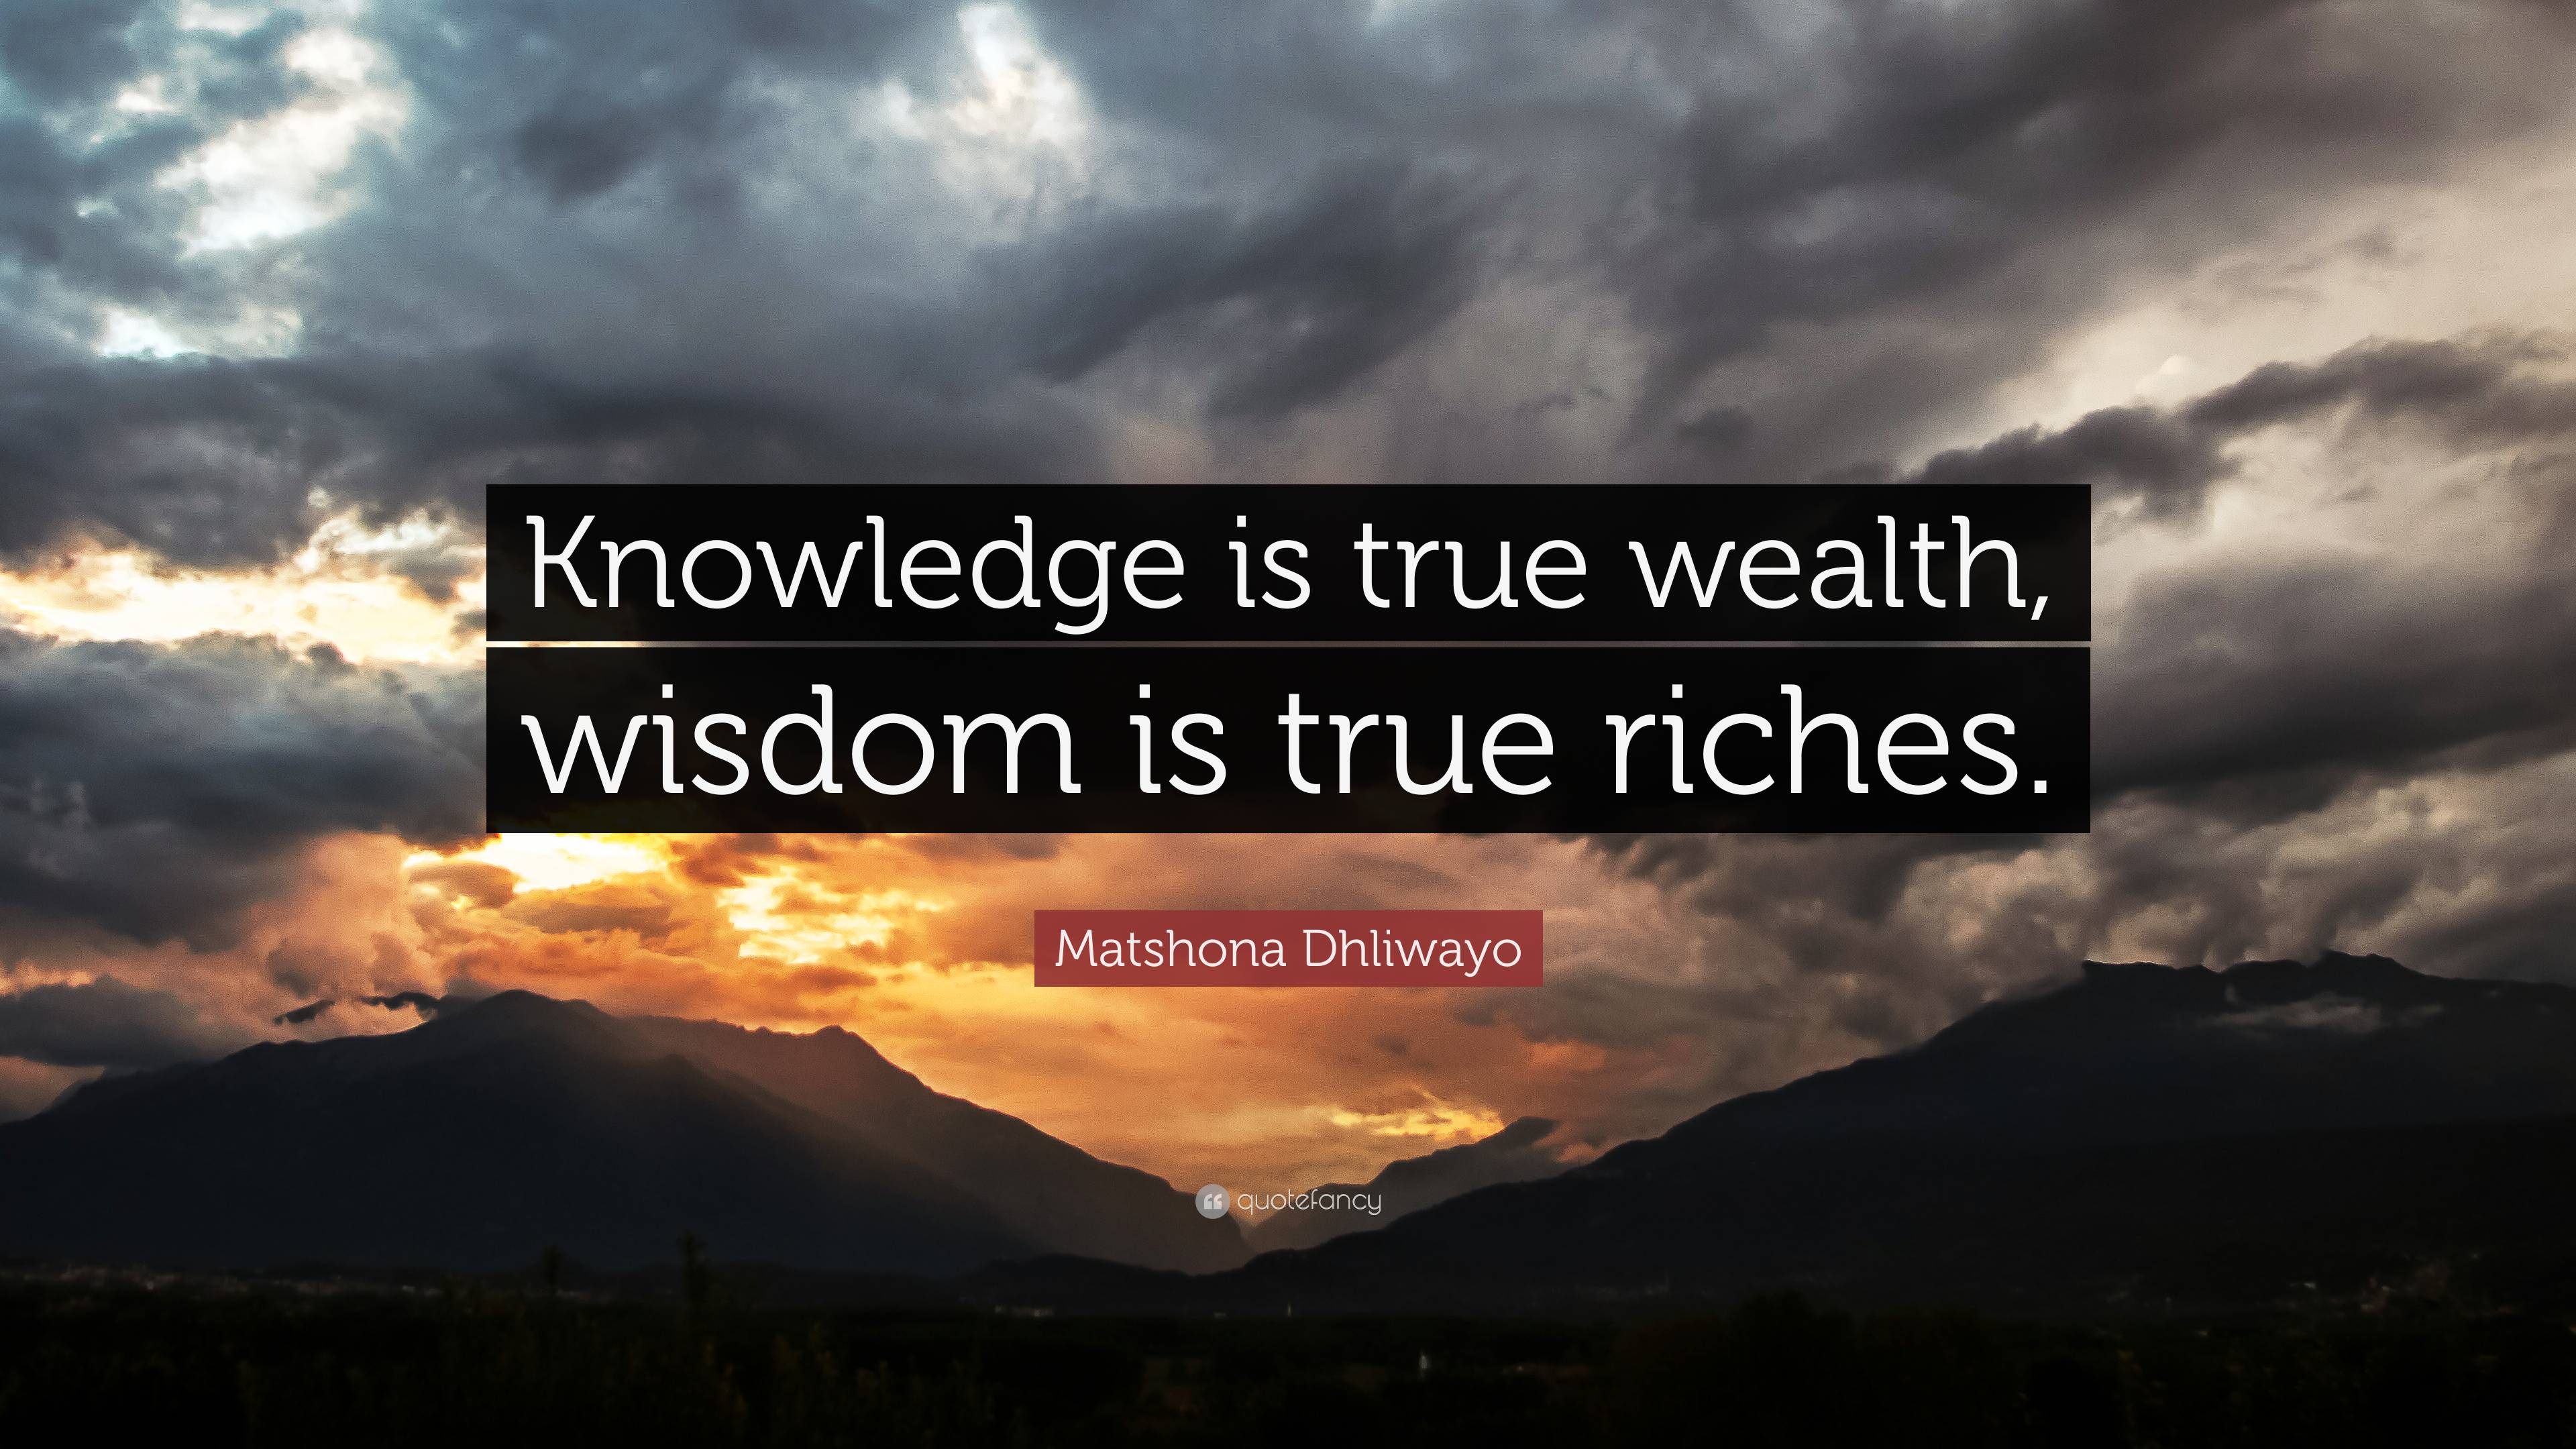 speech on knowledge is wealth